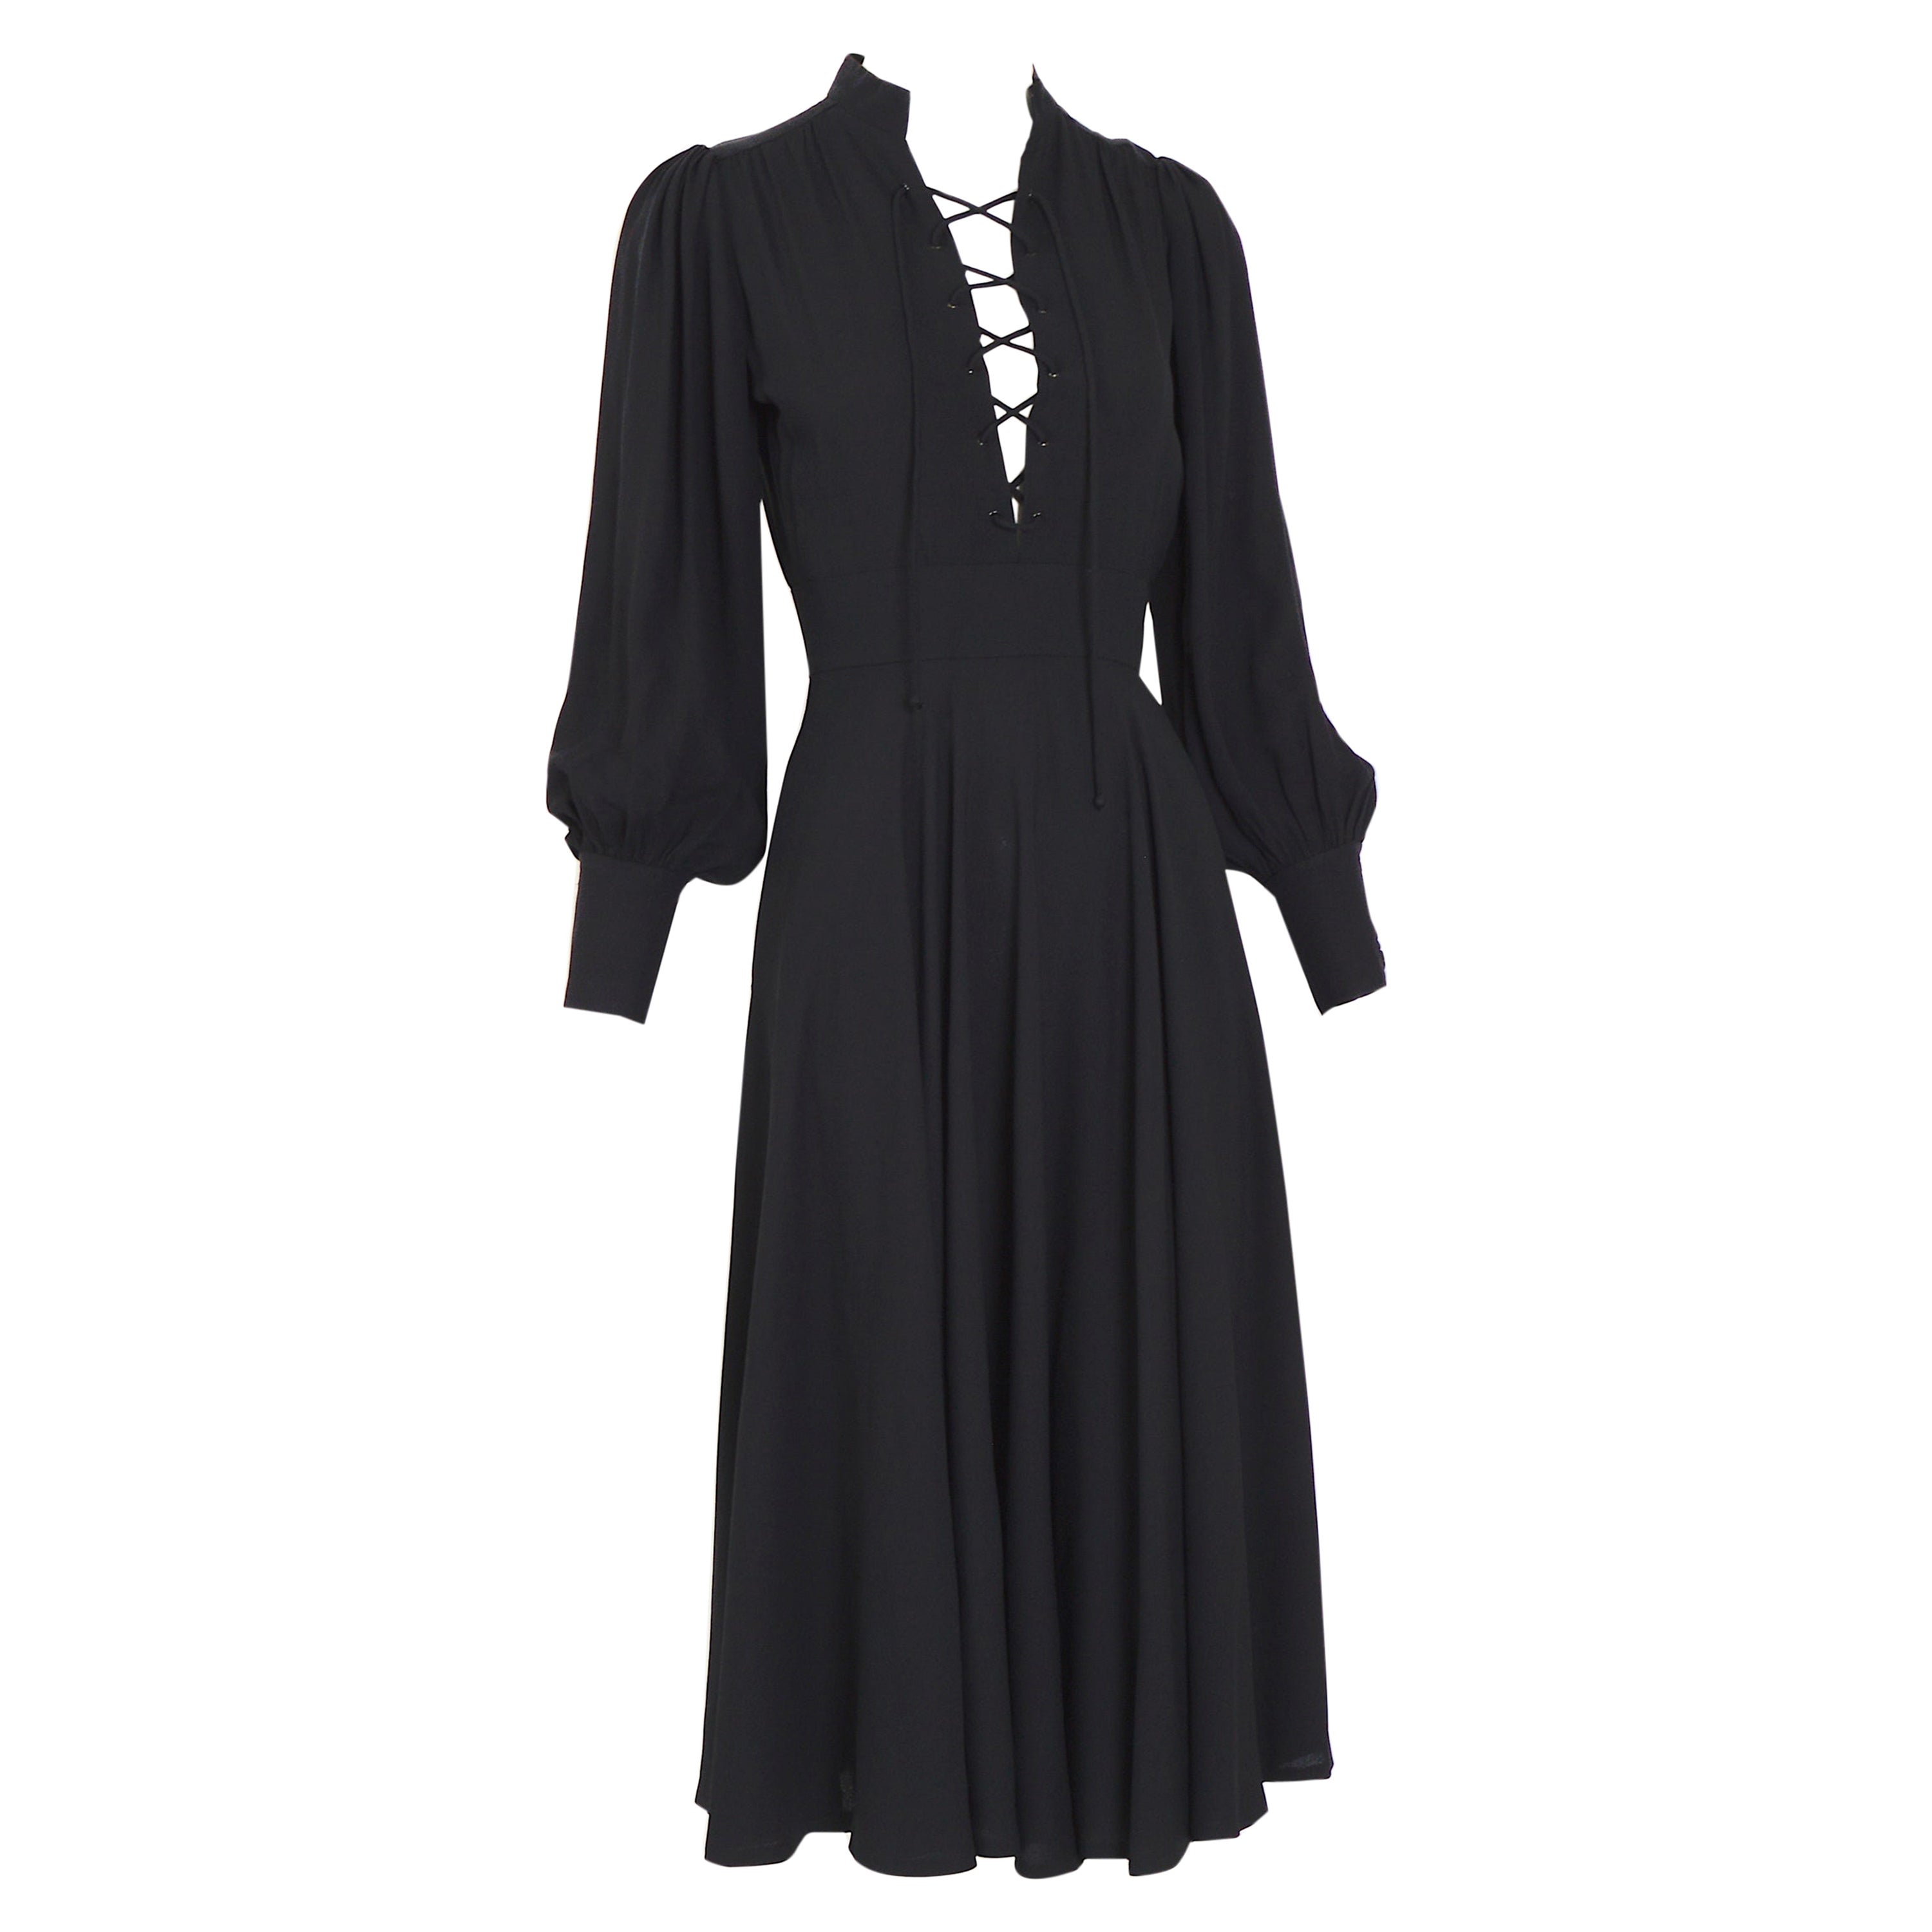 Yves Saint Laurent "rive gauche" iconique vintage 1970s documented black dress